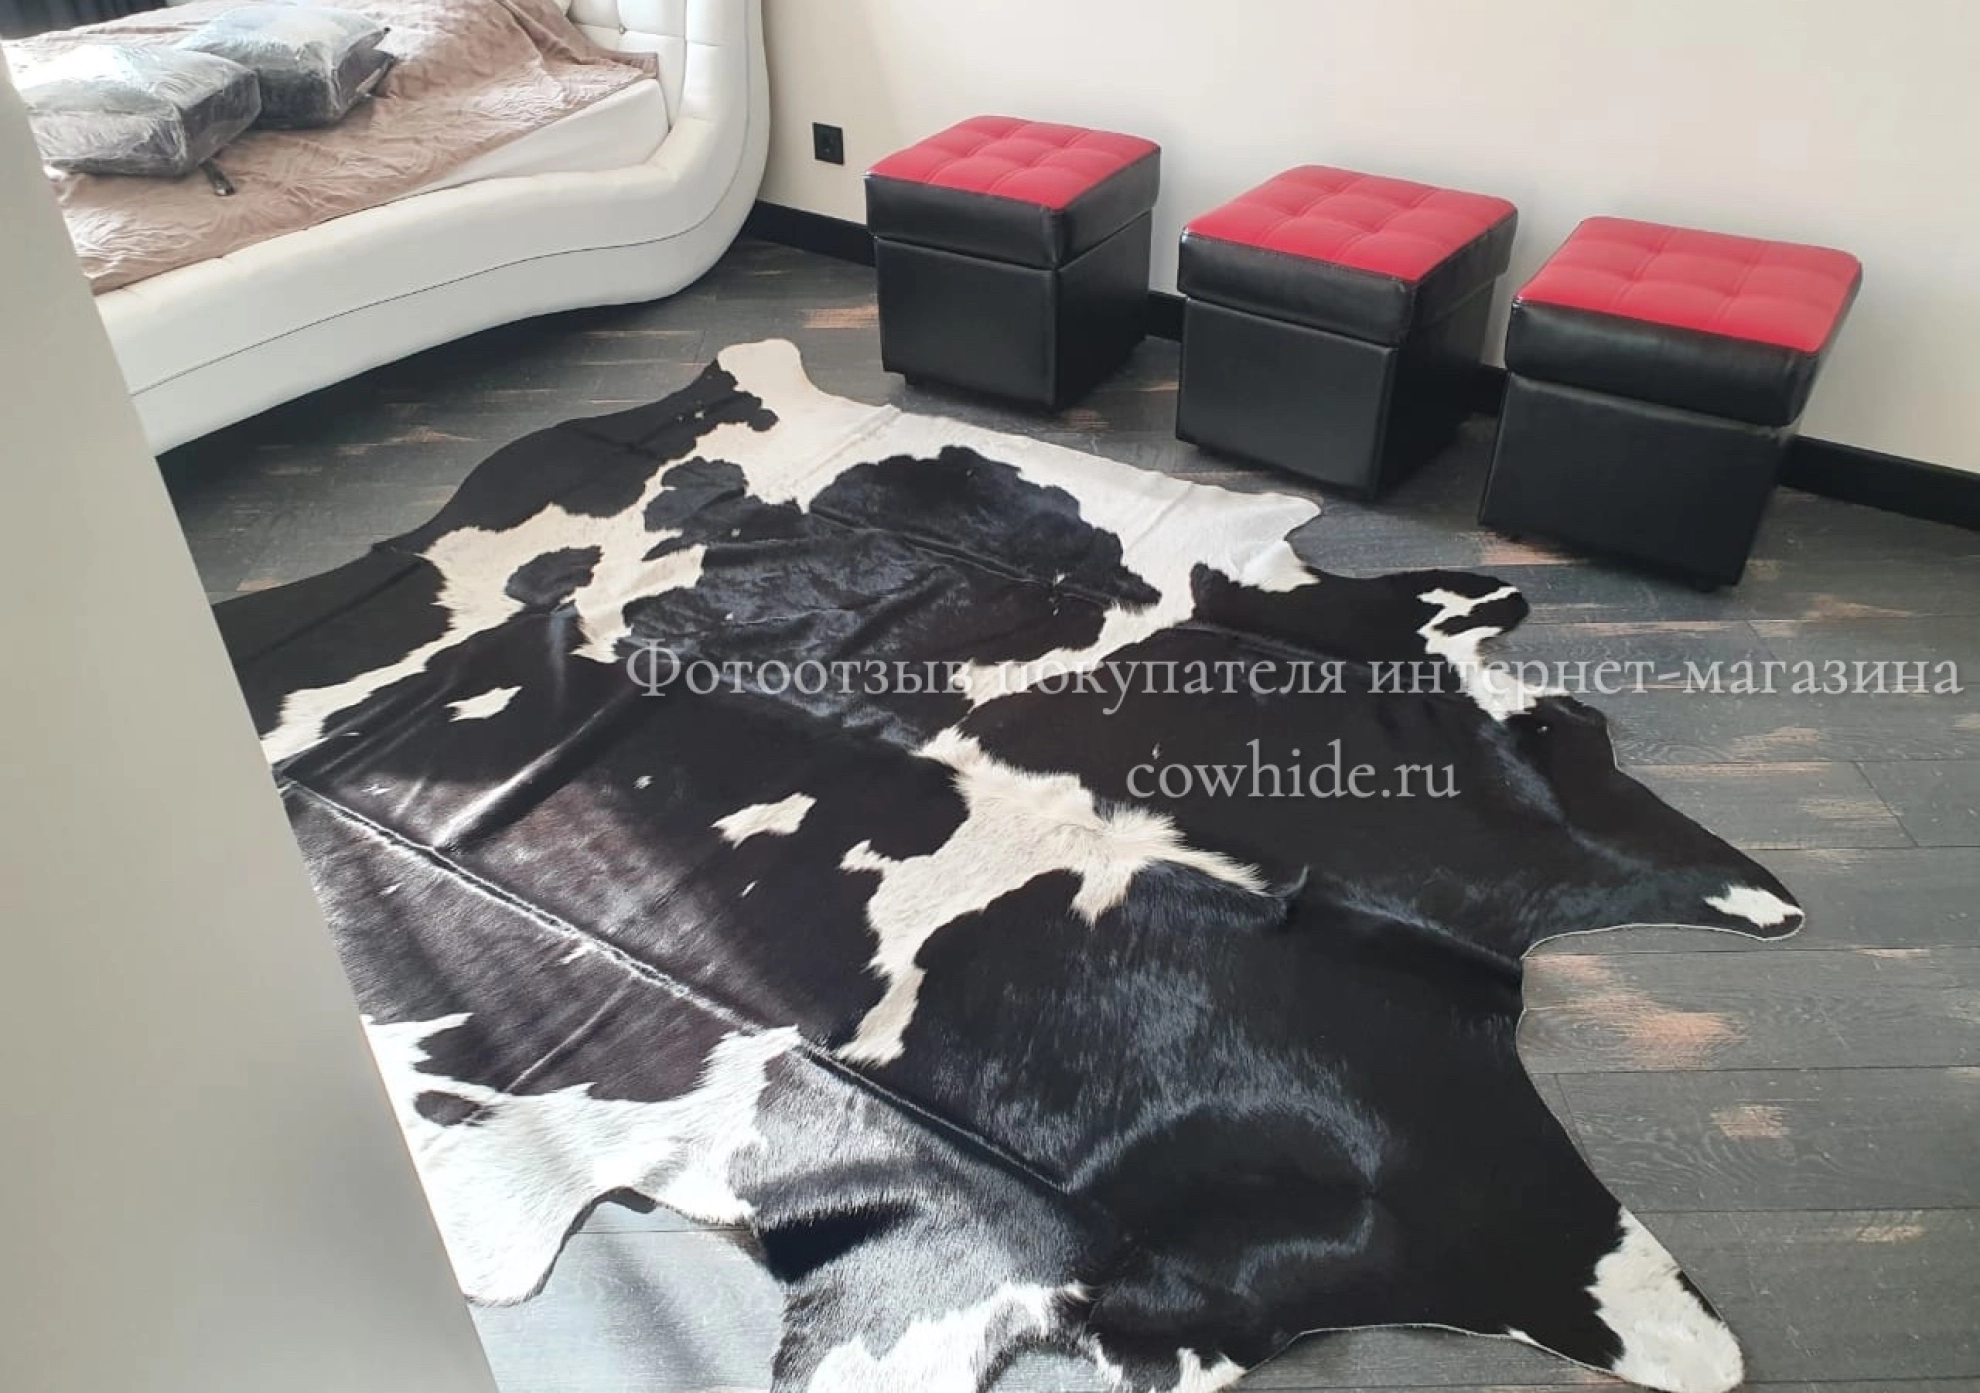 Шкура коровы черно-белая отзыв интернет-магазина Cowhide